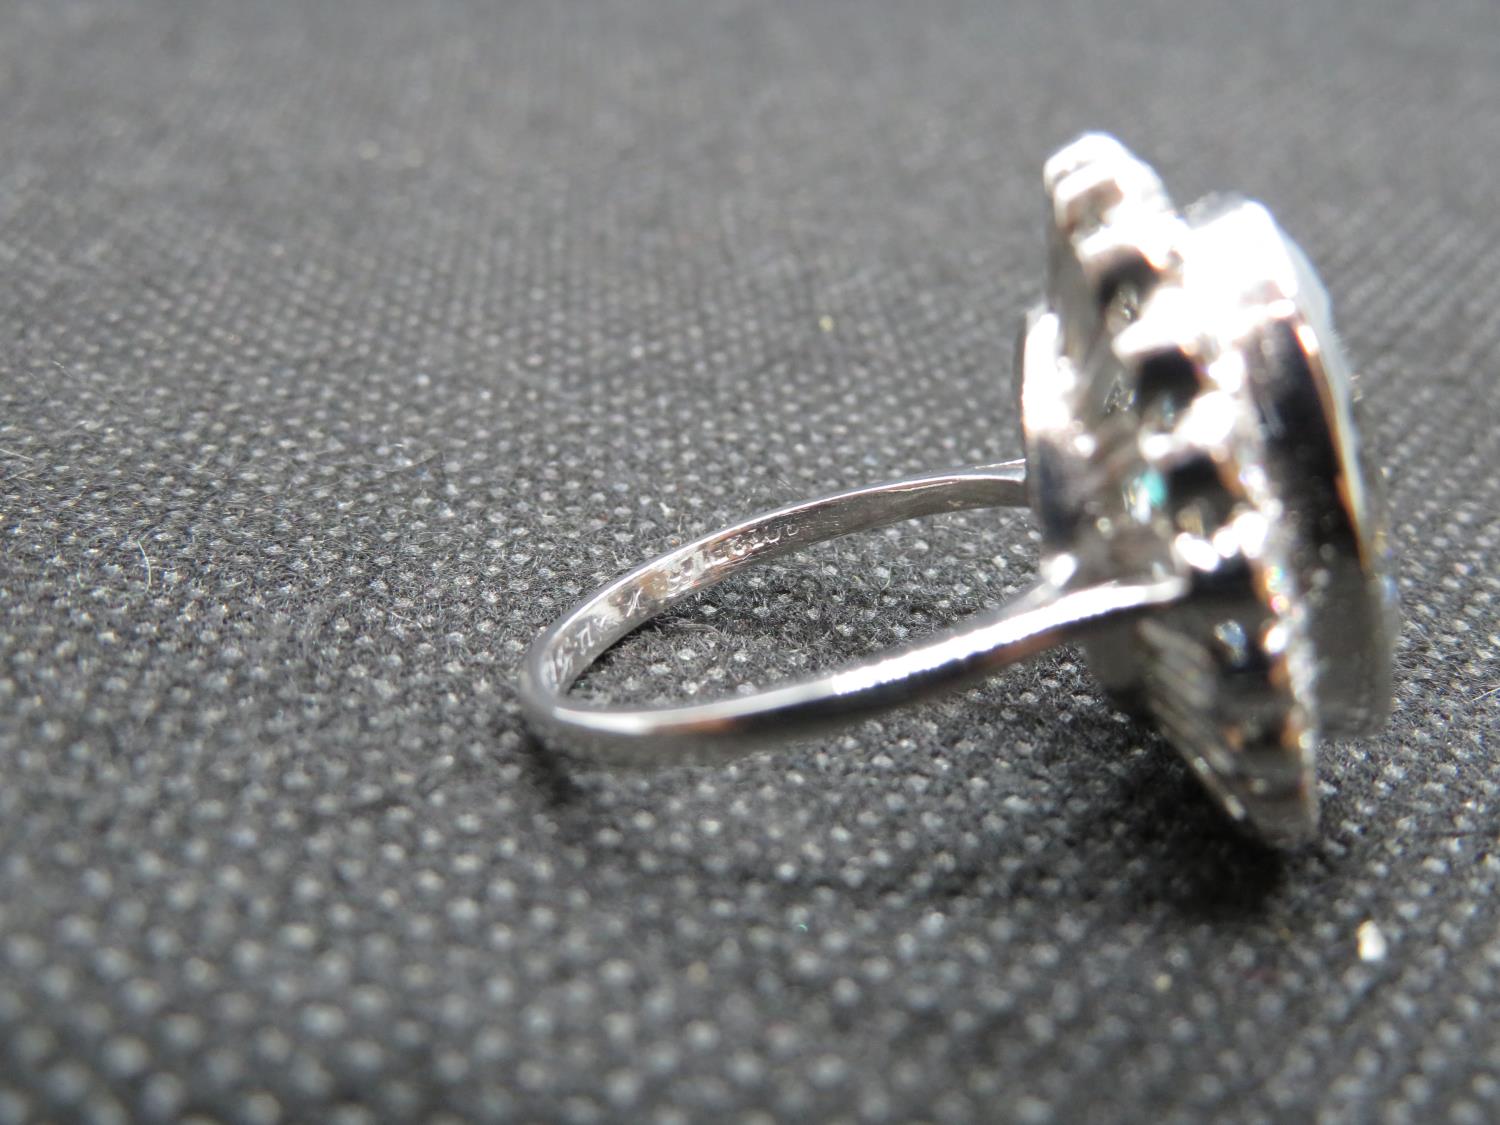 18ct ladies gold and platinum aquamarine diamond ring. Oval aquamarine est. weight 8cts. - Image 3 of 3